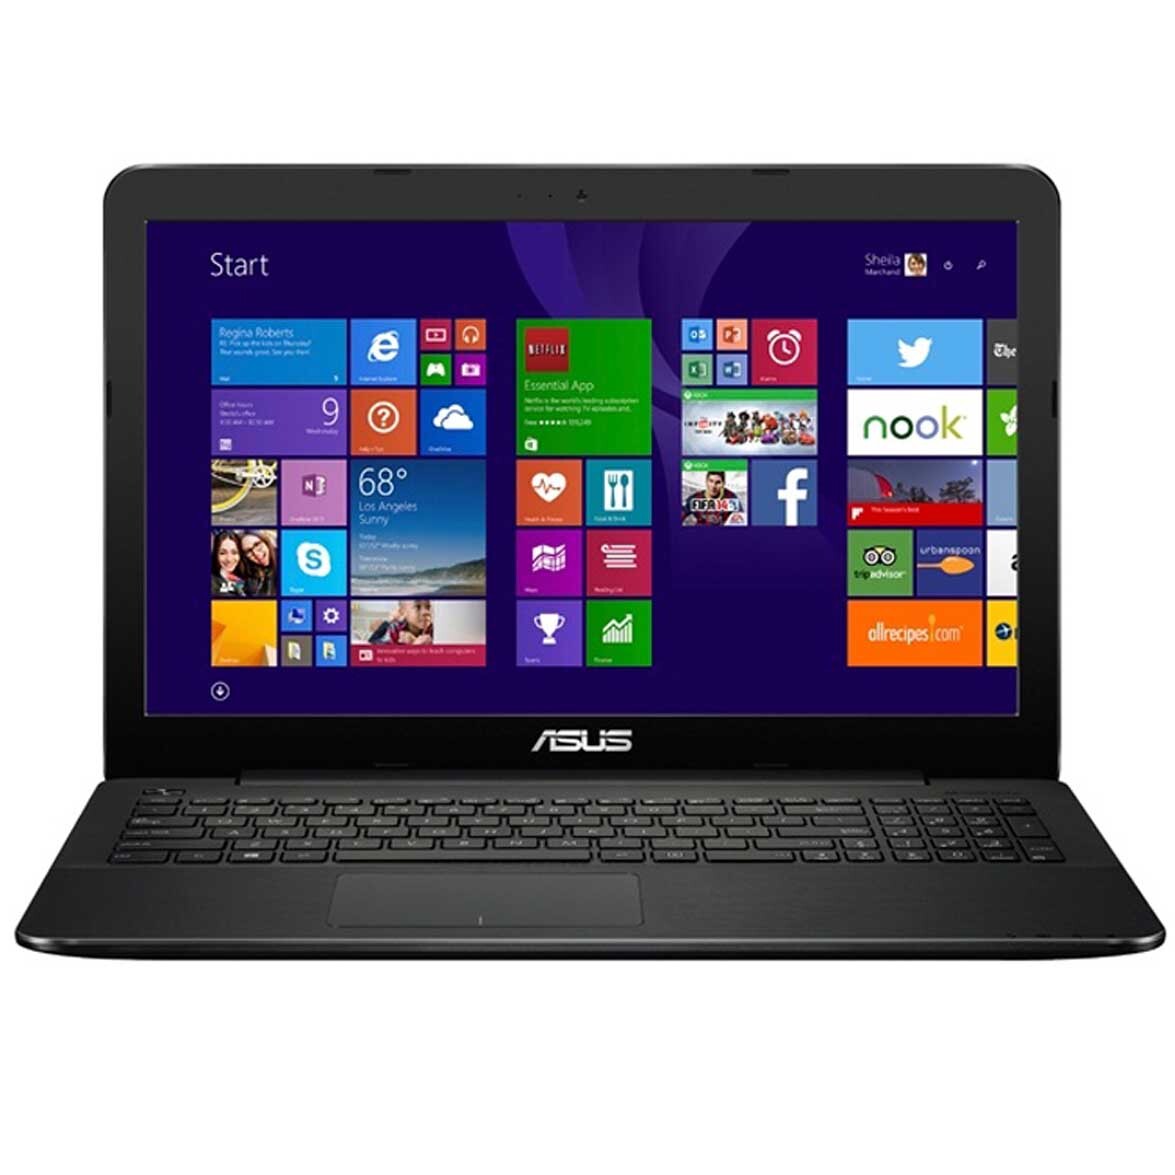 Laptop Asus F554LA-XX1567D - i3-4005U 1.7GHz, RAM 4GB, HDD 500GB, Intel HD 4400, 15.6"